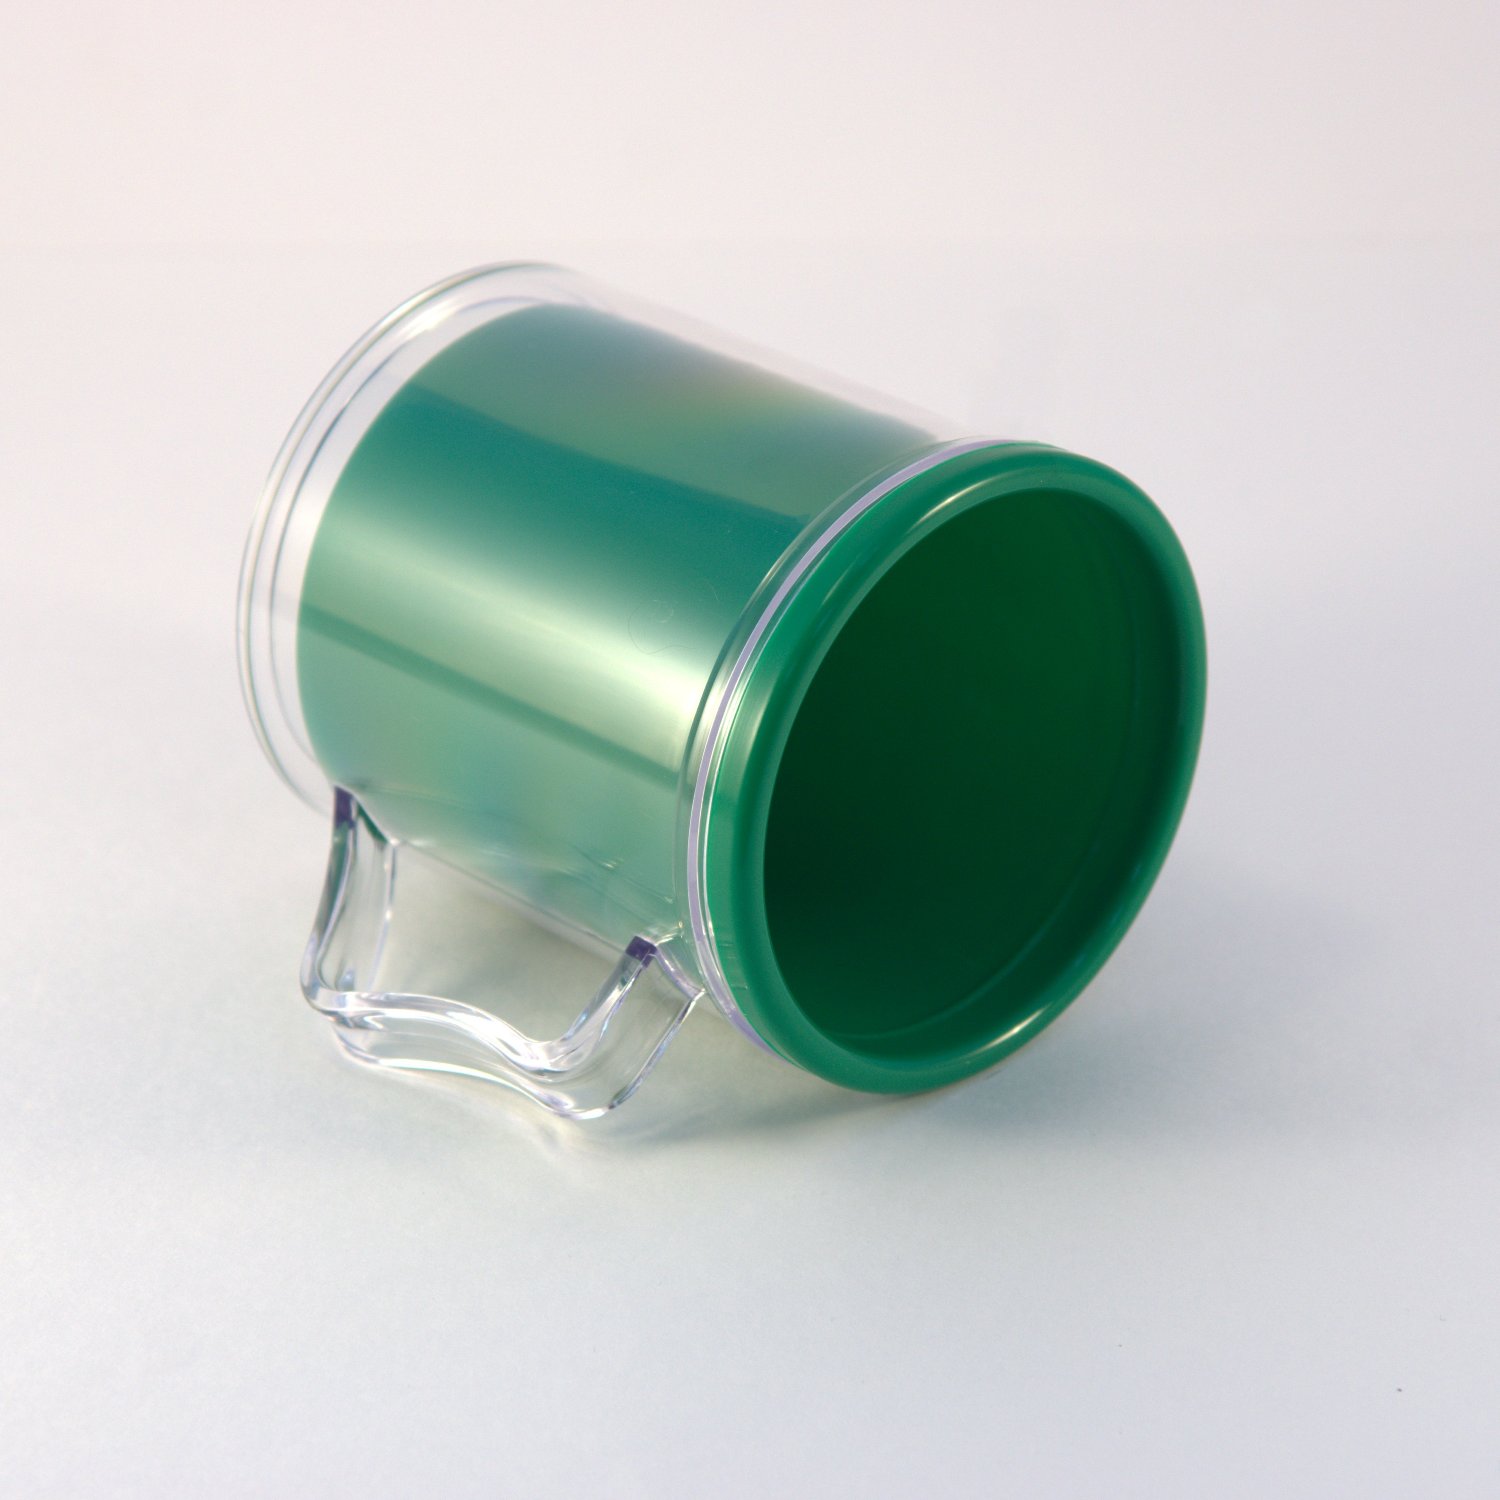 Кружка пластиковая (зеленая внутри)